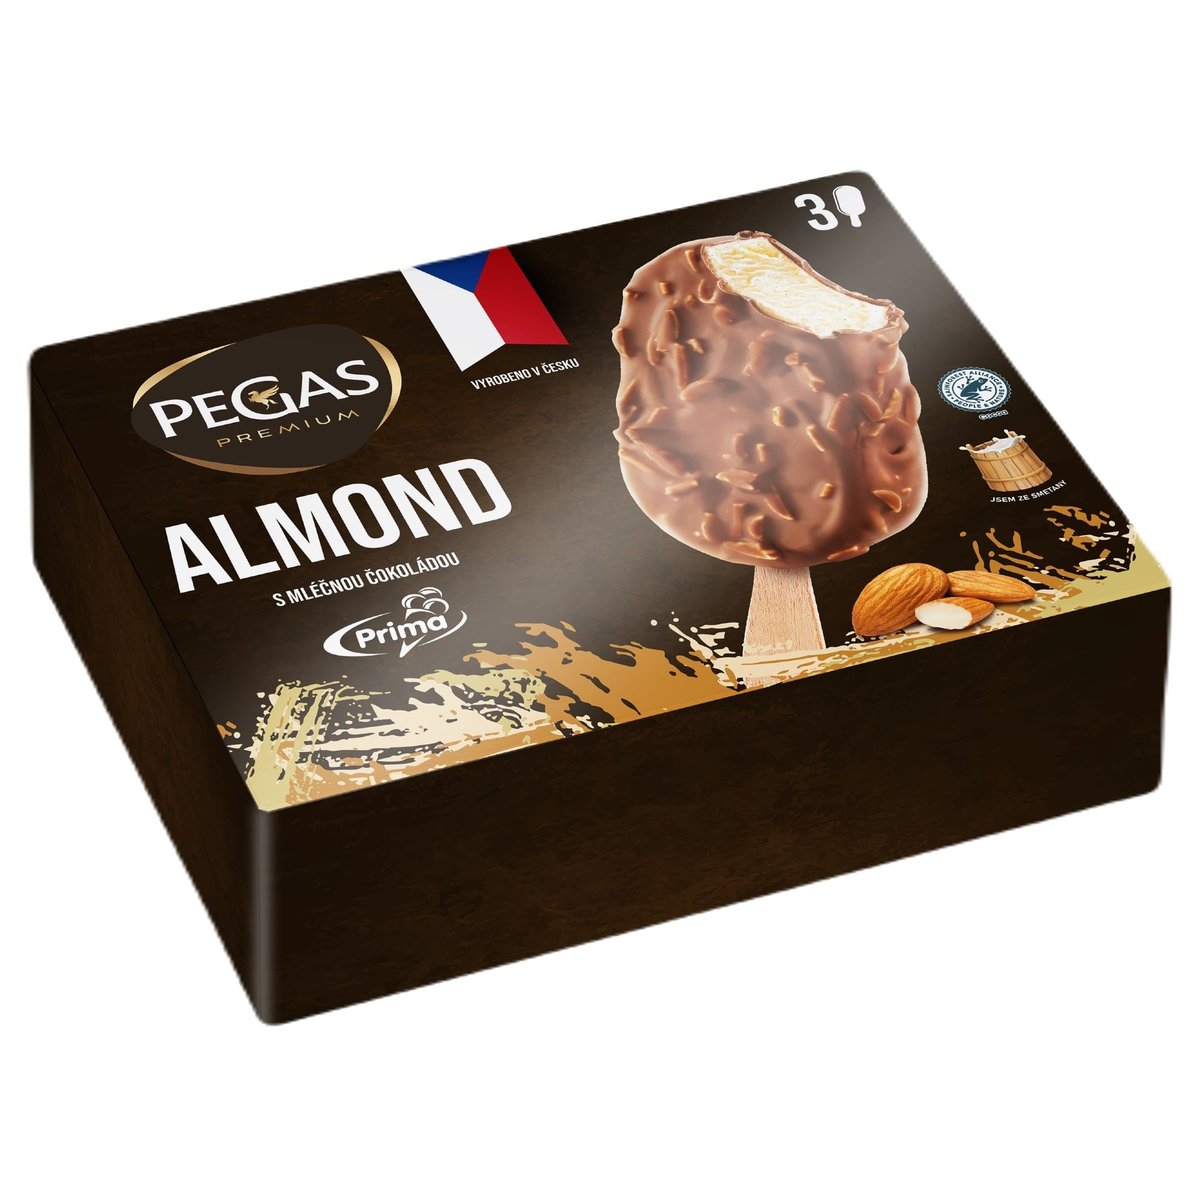 Prima Pegas Premium Almond multipack 3×100 ml